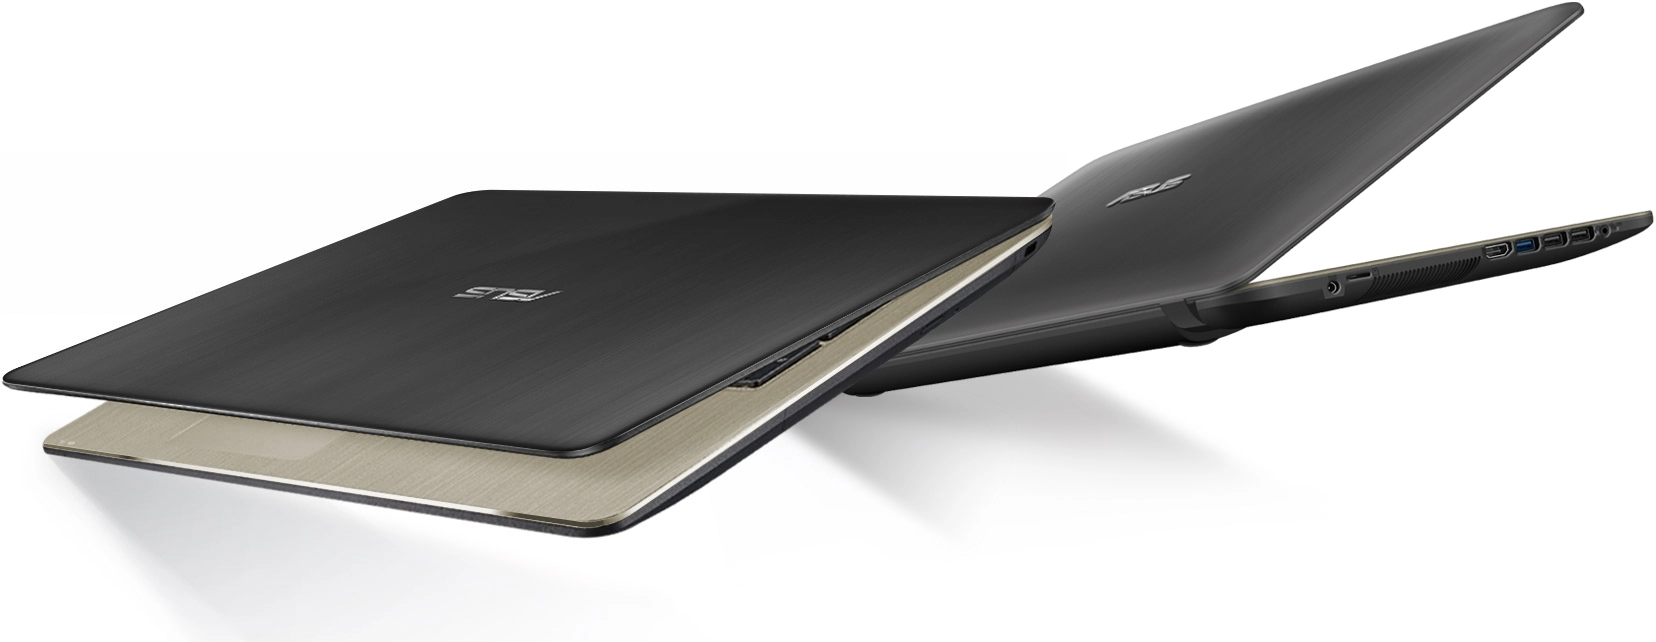 Ноутбук Asus X540MA-GO145, 4 ГБ, EndlessOS, Золотистый с серым